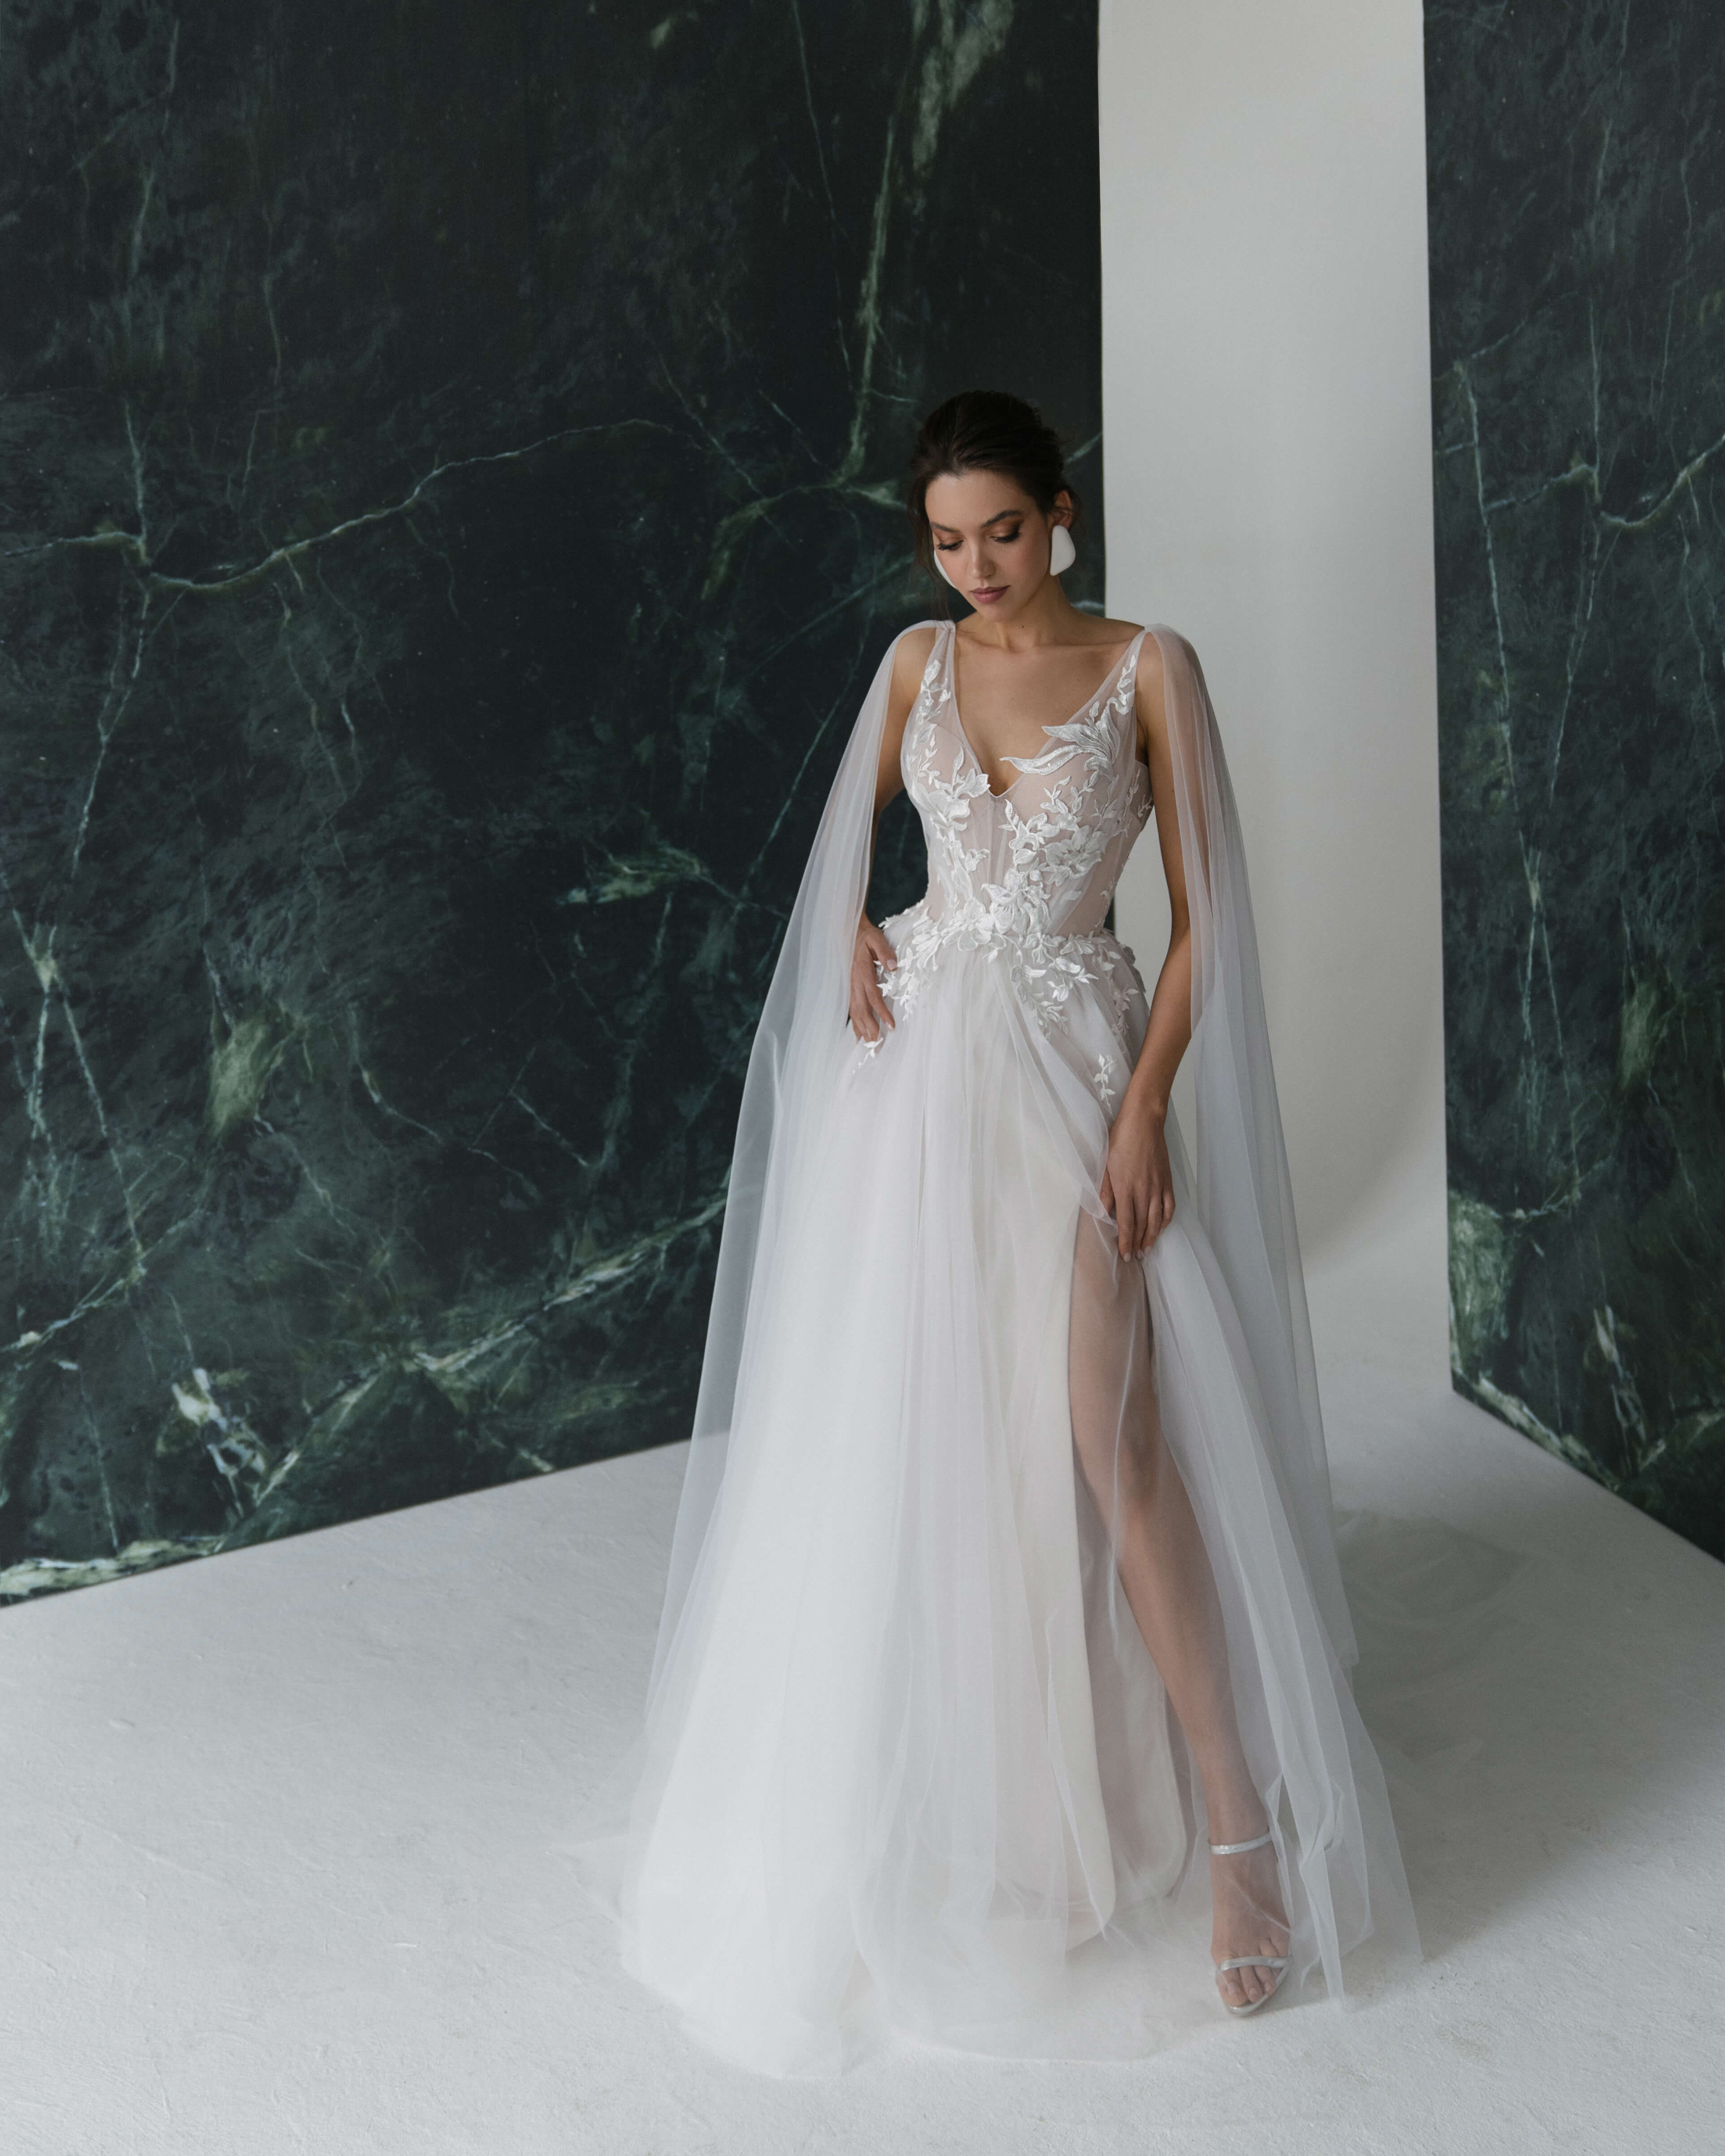 Купить свадебное платье «Саммер» Рара Авис из коллекции Гелекси 2022 года в салоне «Мэри Трюфель»